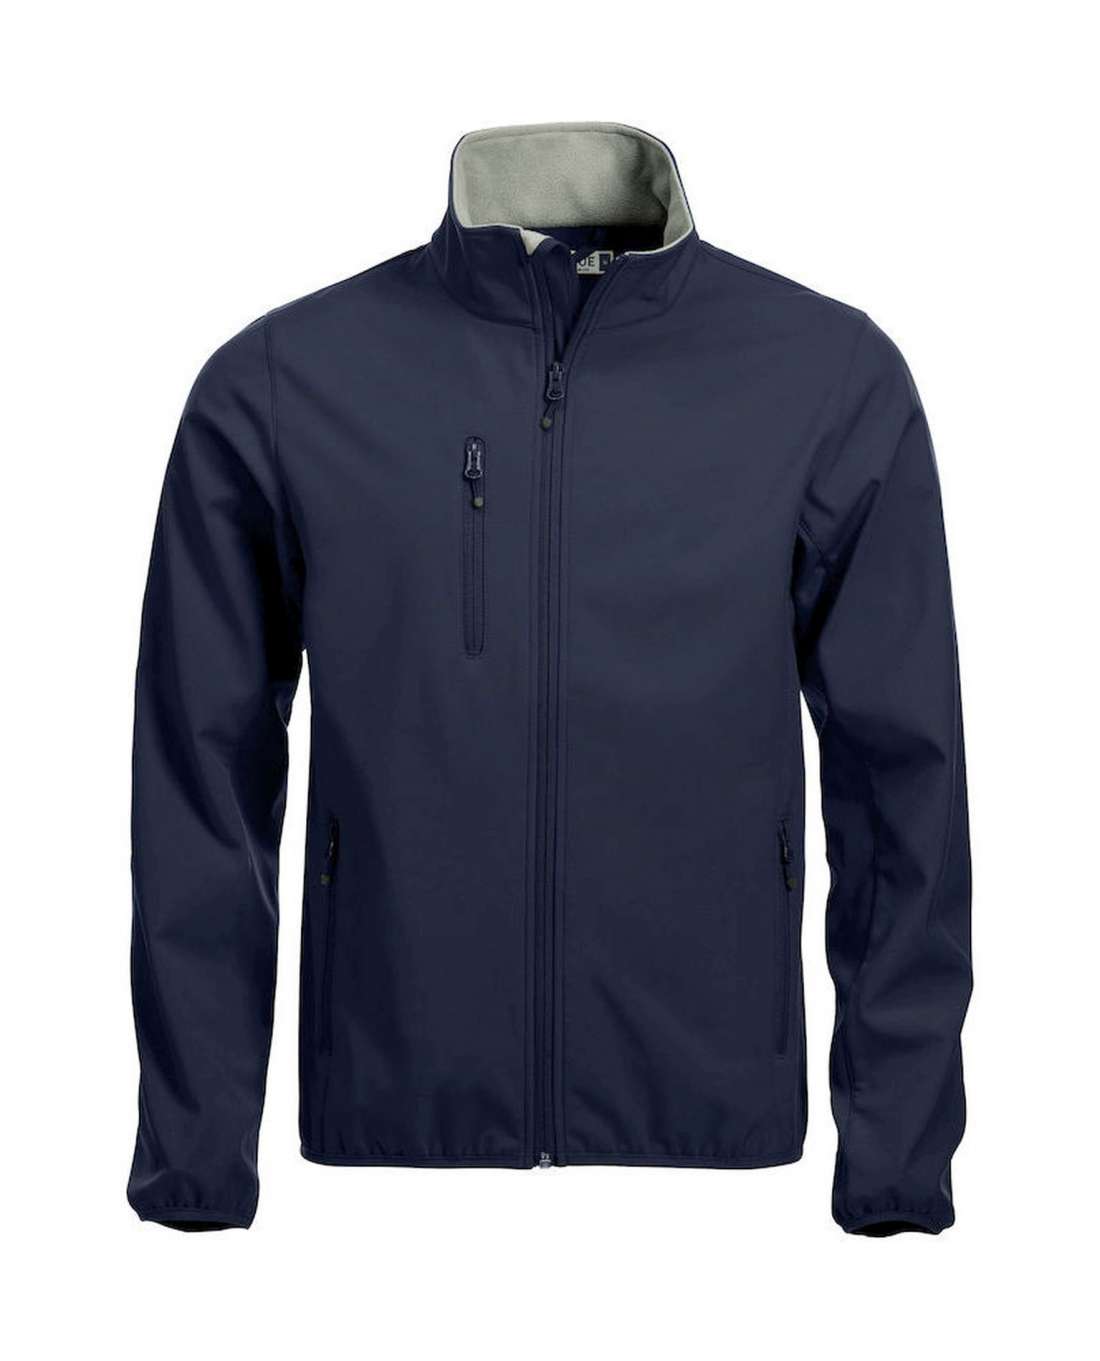 Clique Basic Softshell Jacket, Navy